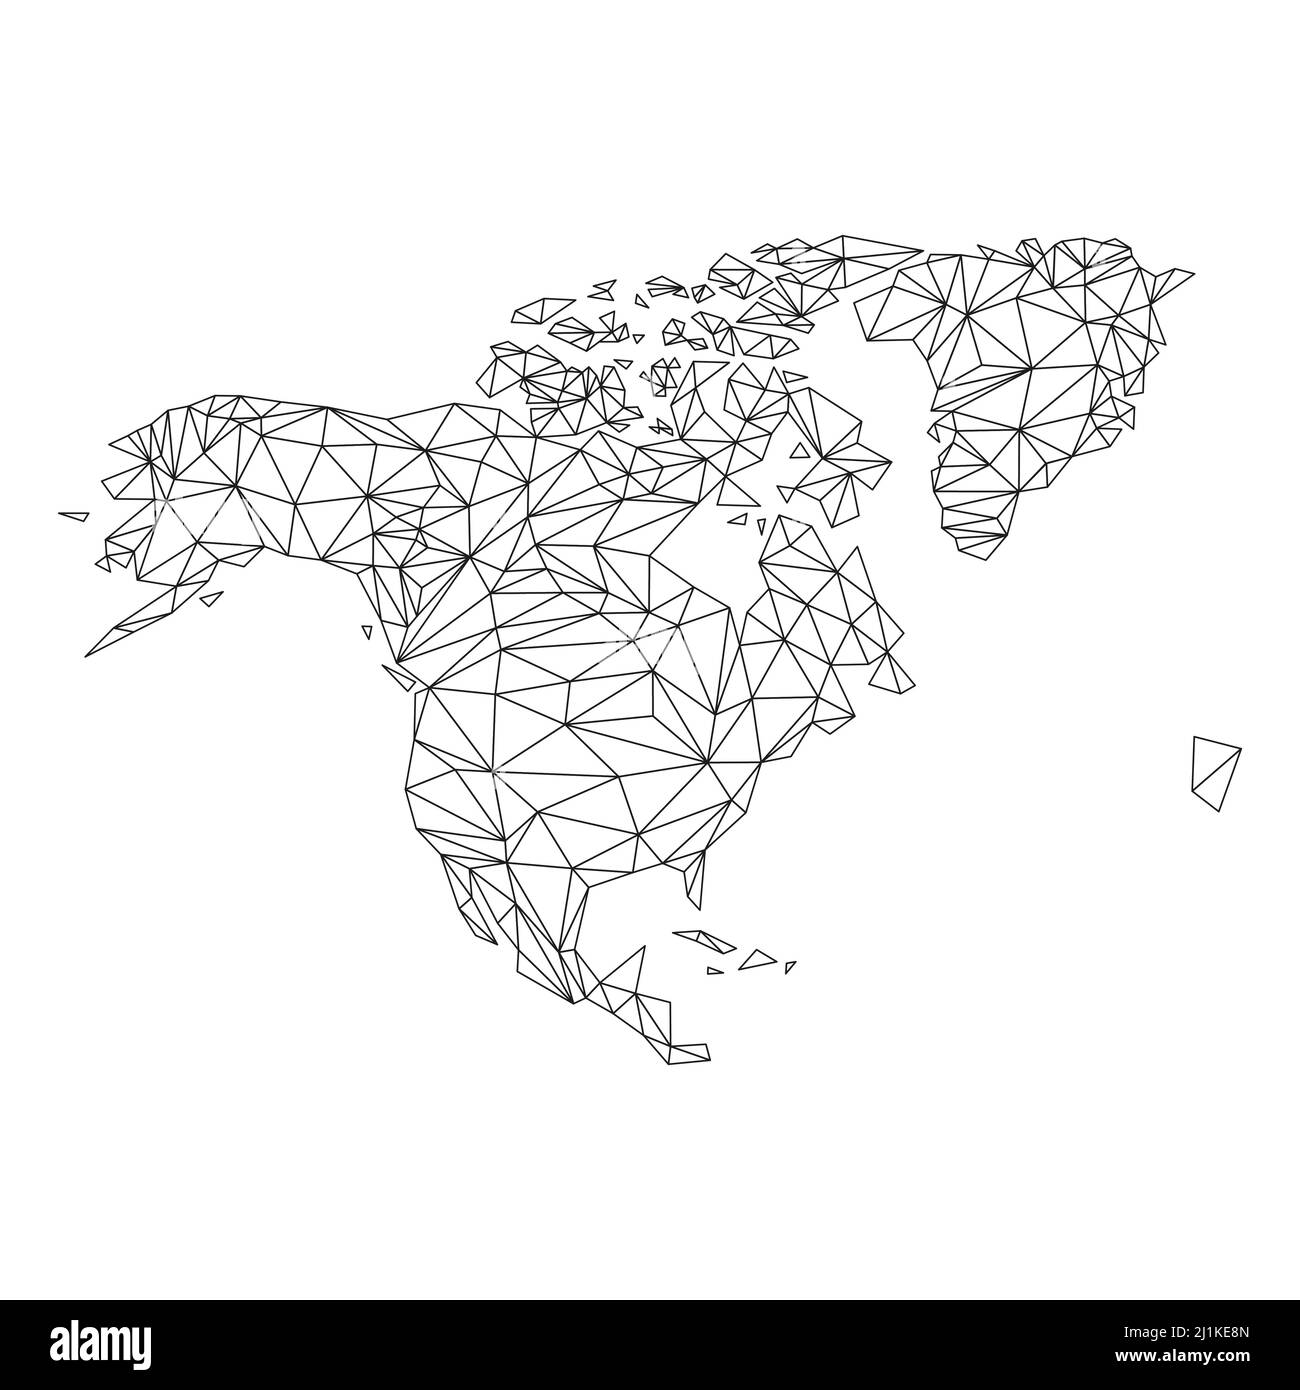 Nordamerika-Karte mit dreieckigen Formen. Karte des nordamerikanischen Kontinents mit polygonalen Linienelementen. Stock Vektor